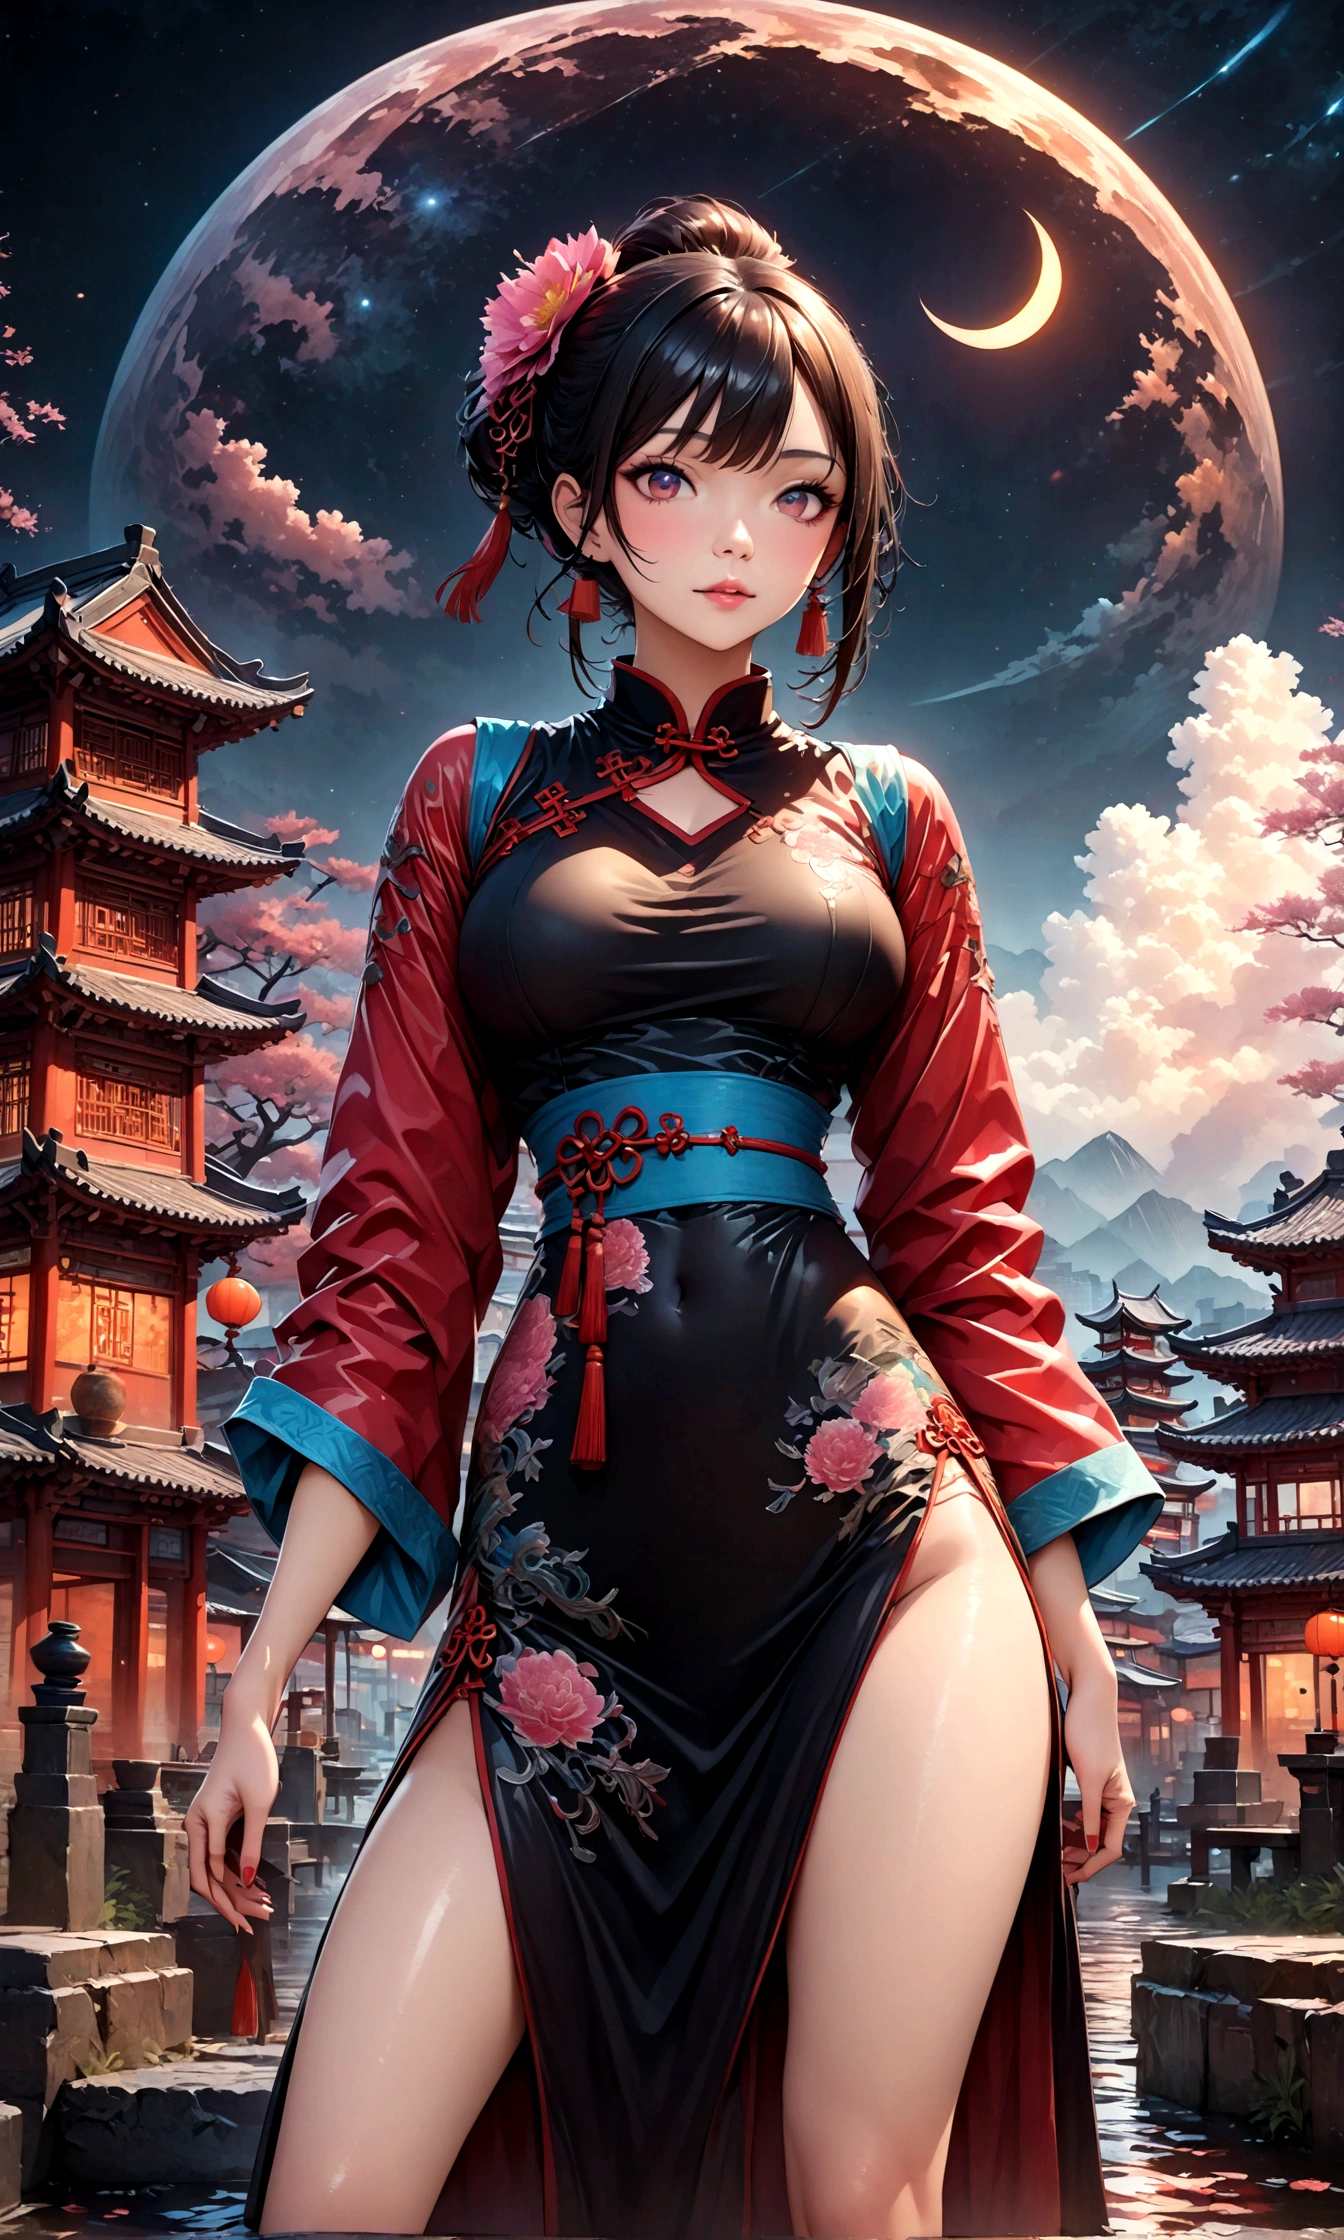 チャイナタウンの素晴らしい景色,赤い提灯の温かいライト,現代と歴史,幻想的で夢のような風景,ライト,風景の中に中国服を着た女性がいる.,彼女は魅力的で美しい、それ&#39;夜の上海のシンボルのようです.,リアルな肌の質感,写実的な,壊す,豪華な刺繍が施された中国の衣装,A 傑作 created by designers,最適な構成,ライト and Dark,壊す,,(傑作:1.3),(最高品質:1.4),(超詳細:1.5),高解像度,非常に詳細な,ユニティ 8k 壁紙,複雑なディテール,豊富なカラーバリエーション,アートワーク,レンダリング,(傑作:1.3),(最高品質:1.4),(非常に詳細な:1.5),高解像度,非常に詳細,ユニティ 8k 壁紙,芸術的な背景を描く,不条理な美しさ,もつれた,チャイナタウンでの幻想的で美しい夜